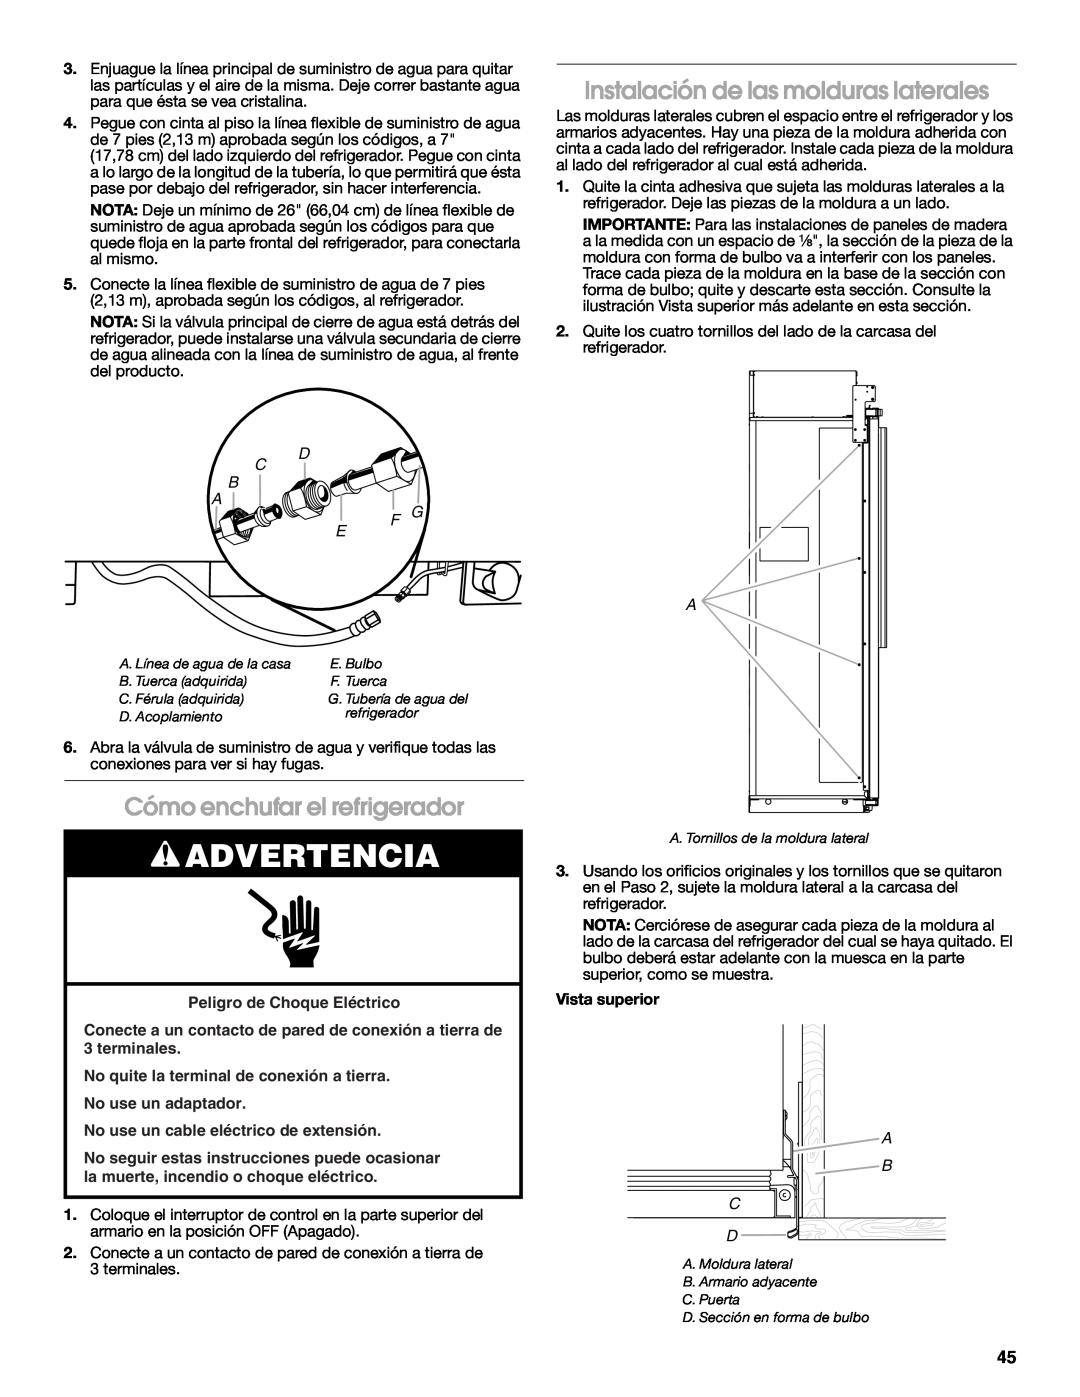 Jenn-Air W10379137A Instalación de las molduras laterales, Cómo enchufar el refrigerador, Advertencia, C B A, A B C D 